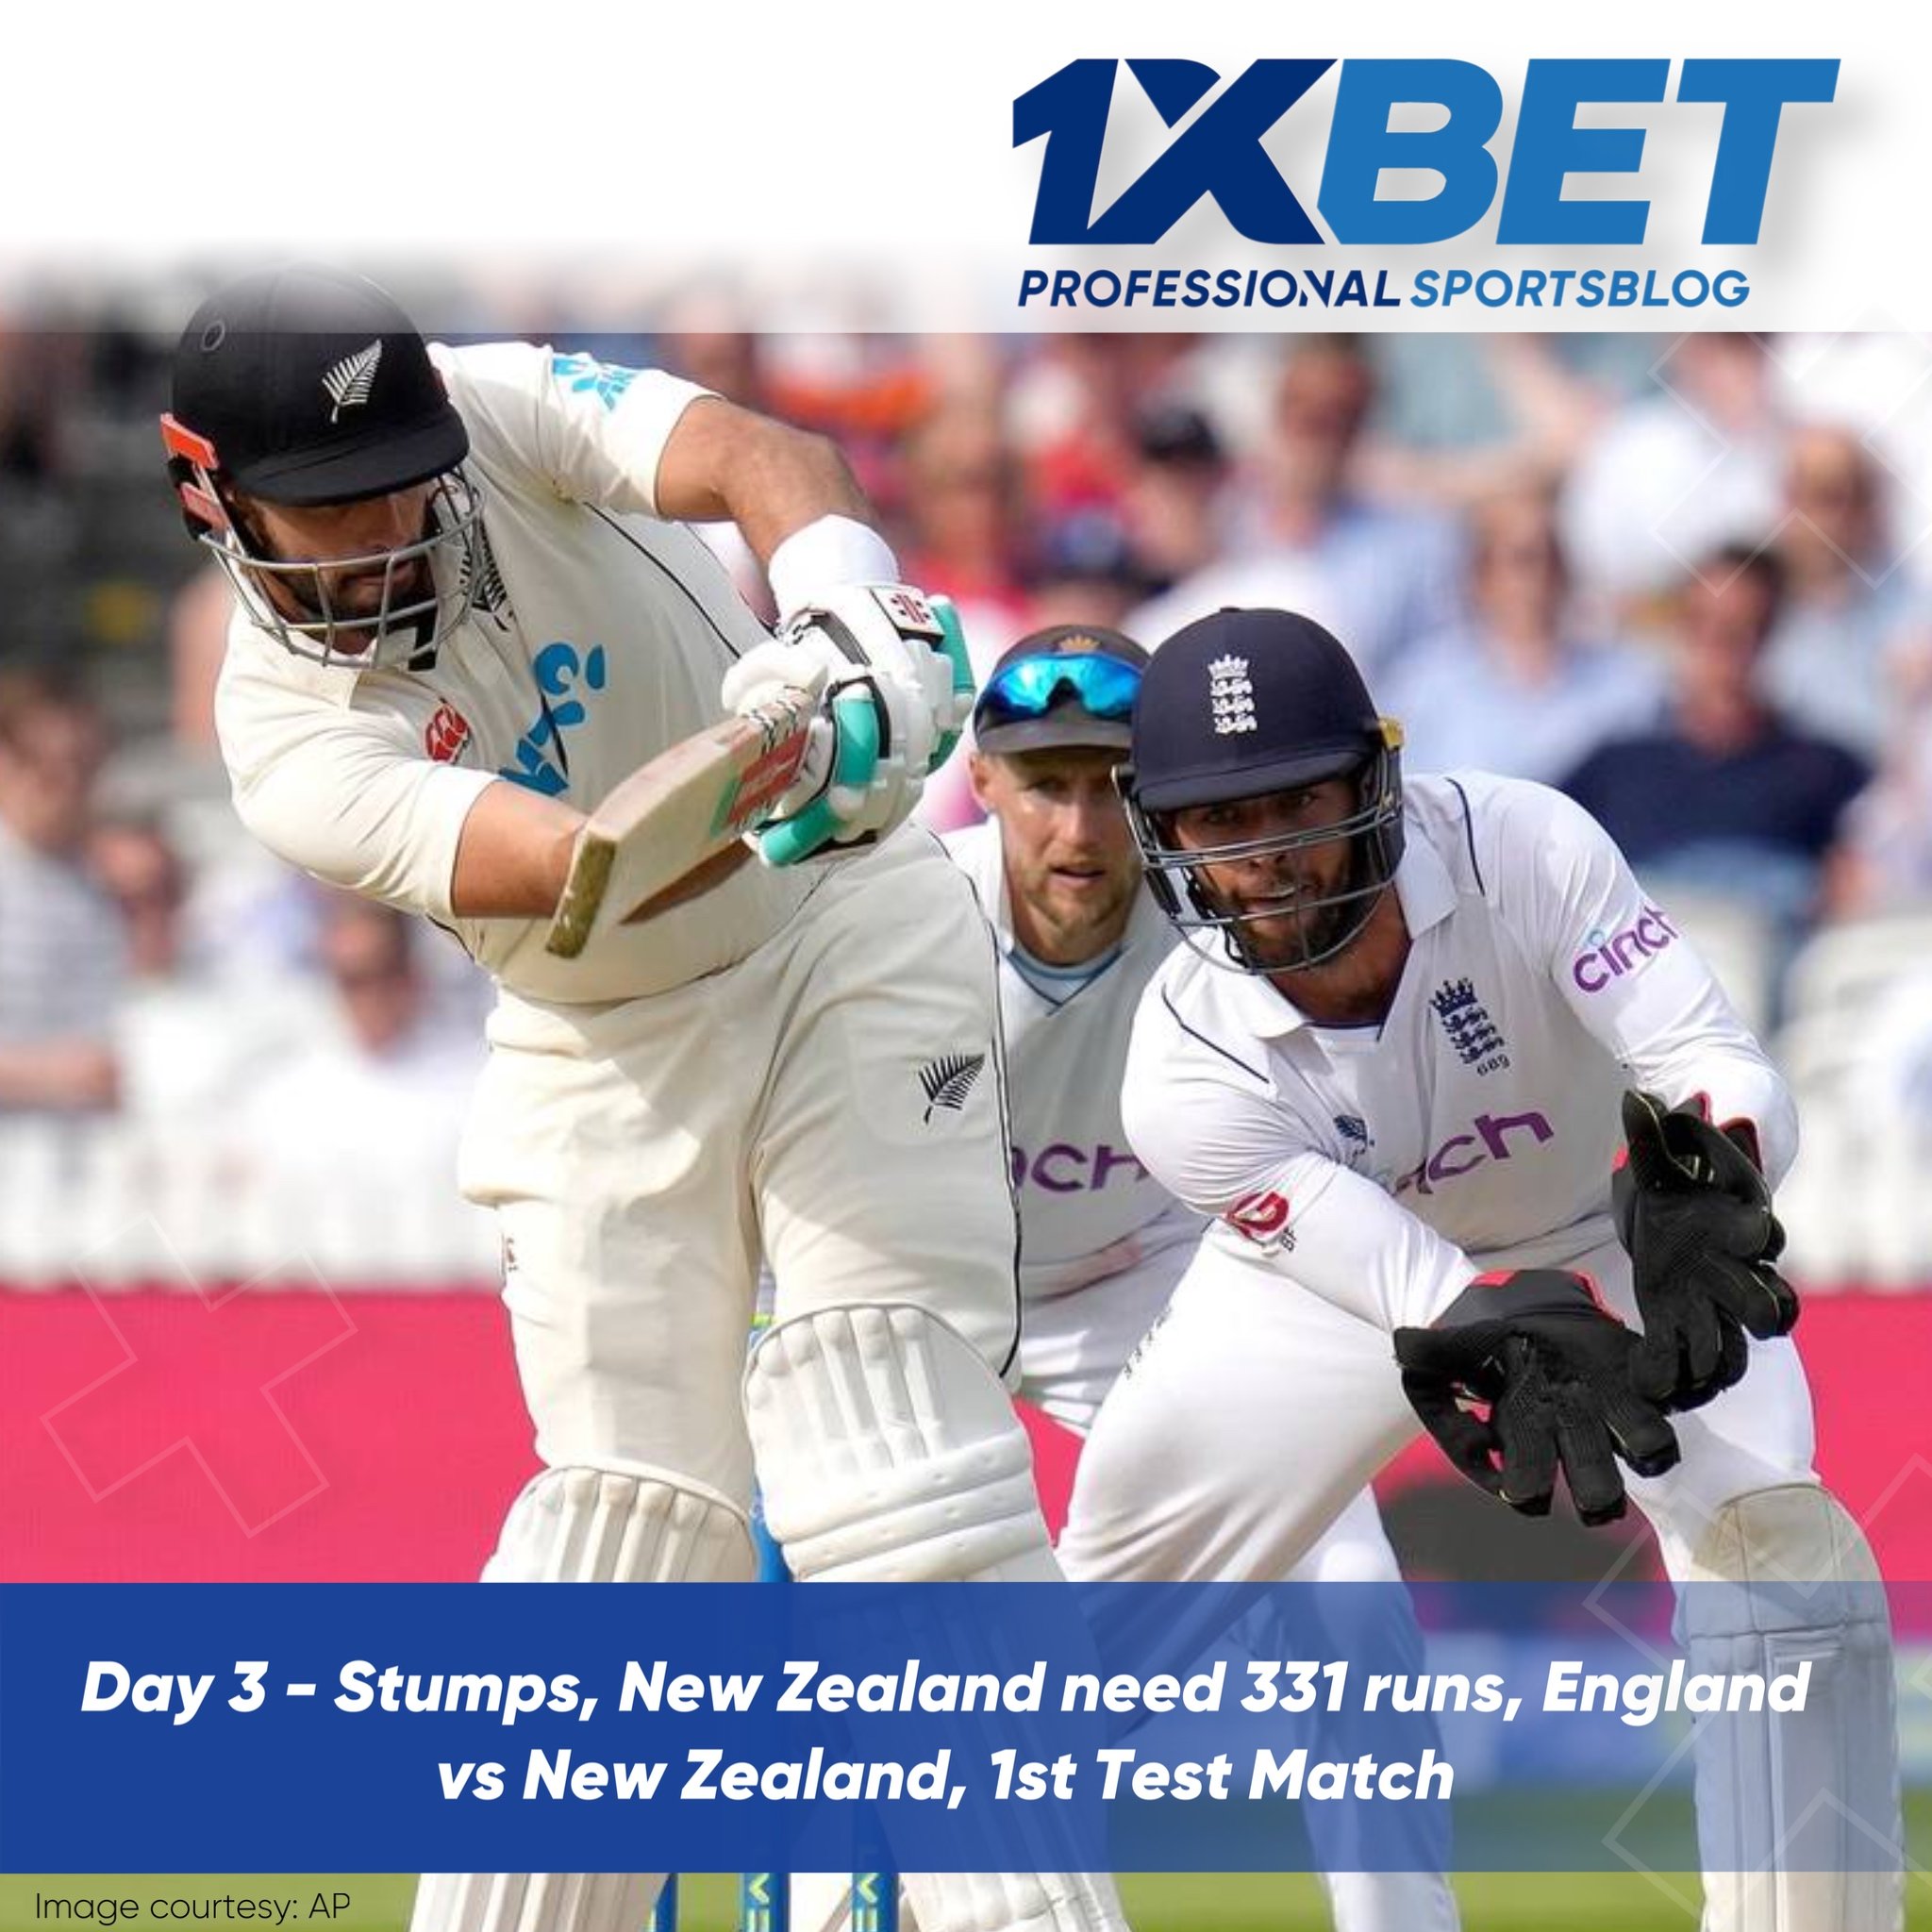 Day 3 - Stumps, New Zealand need 331 runs